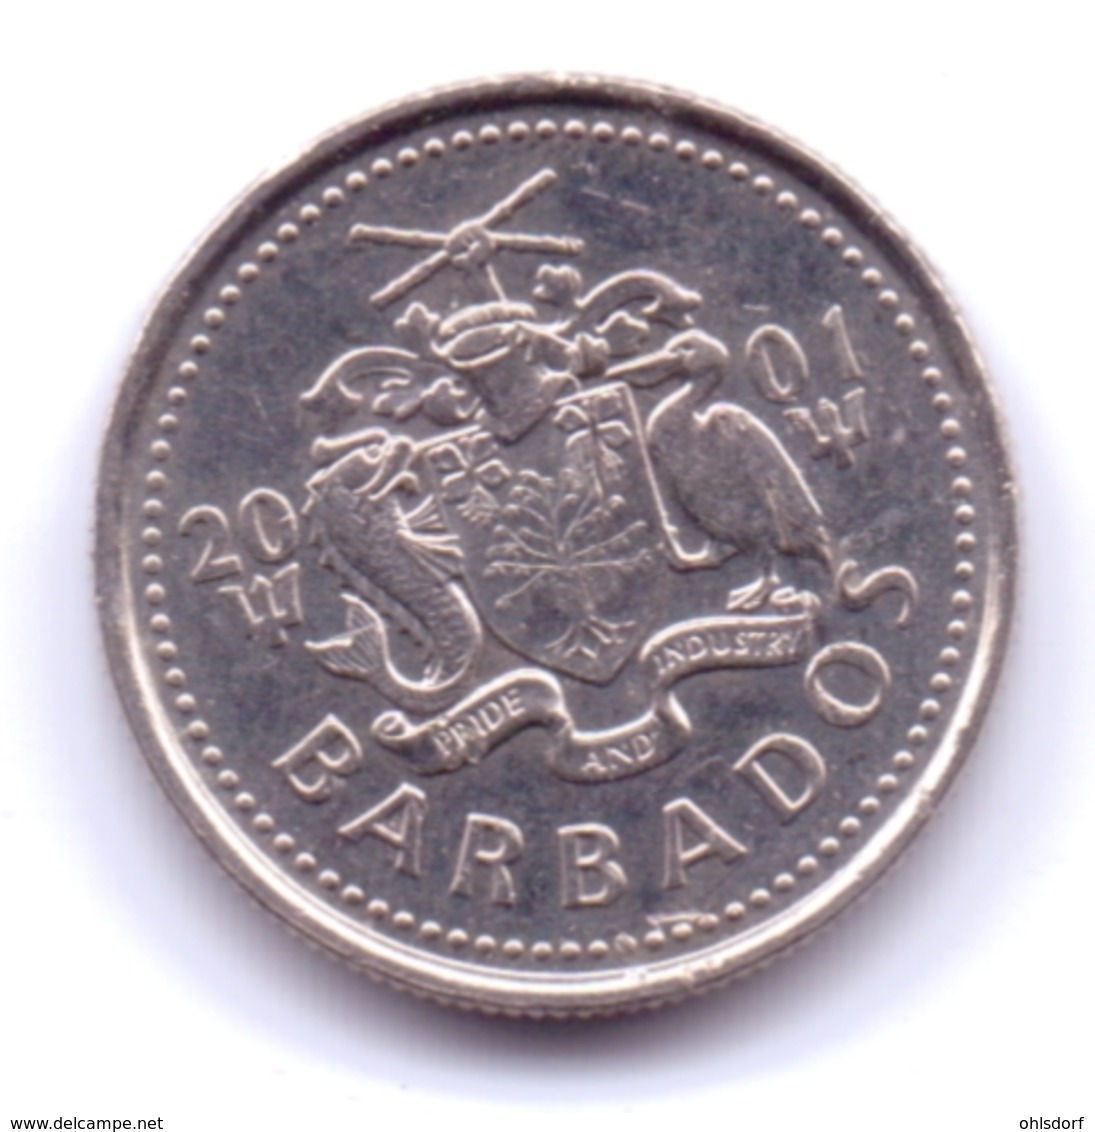 BARBADOS 2001: 10 Cents, KM 12 - Barbados